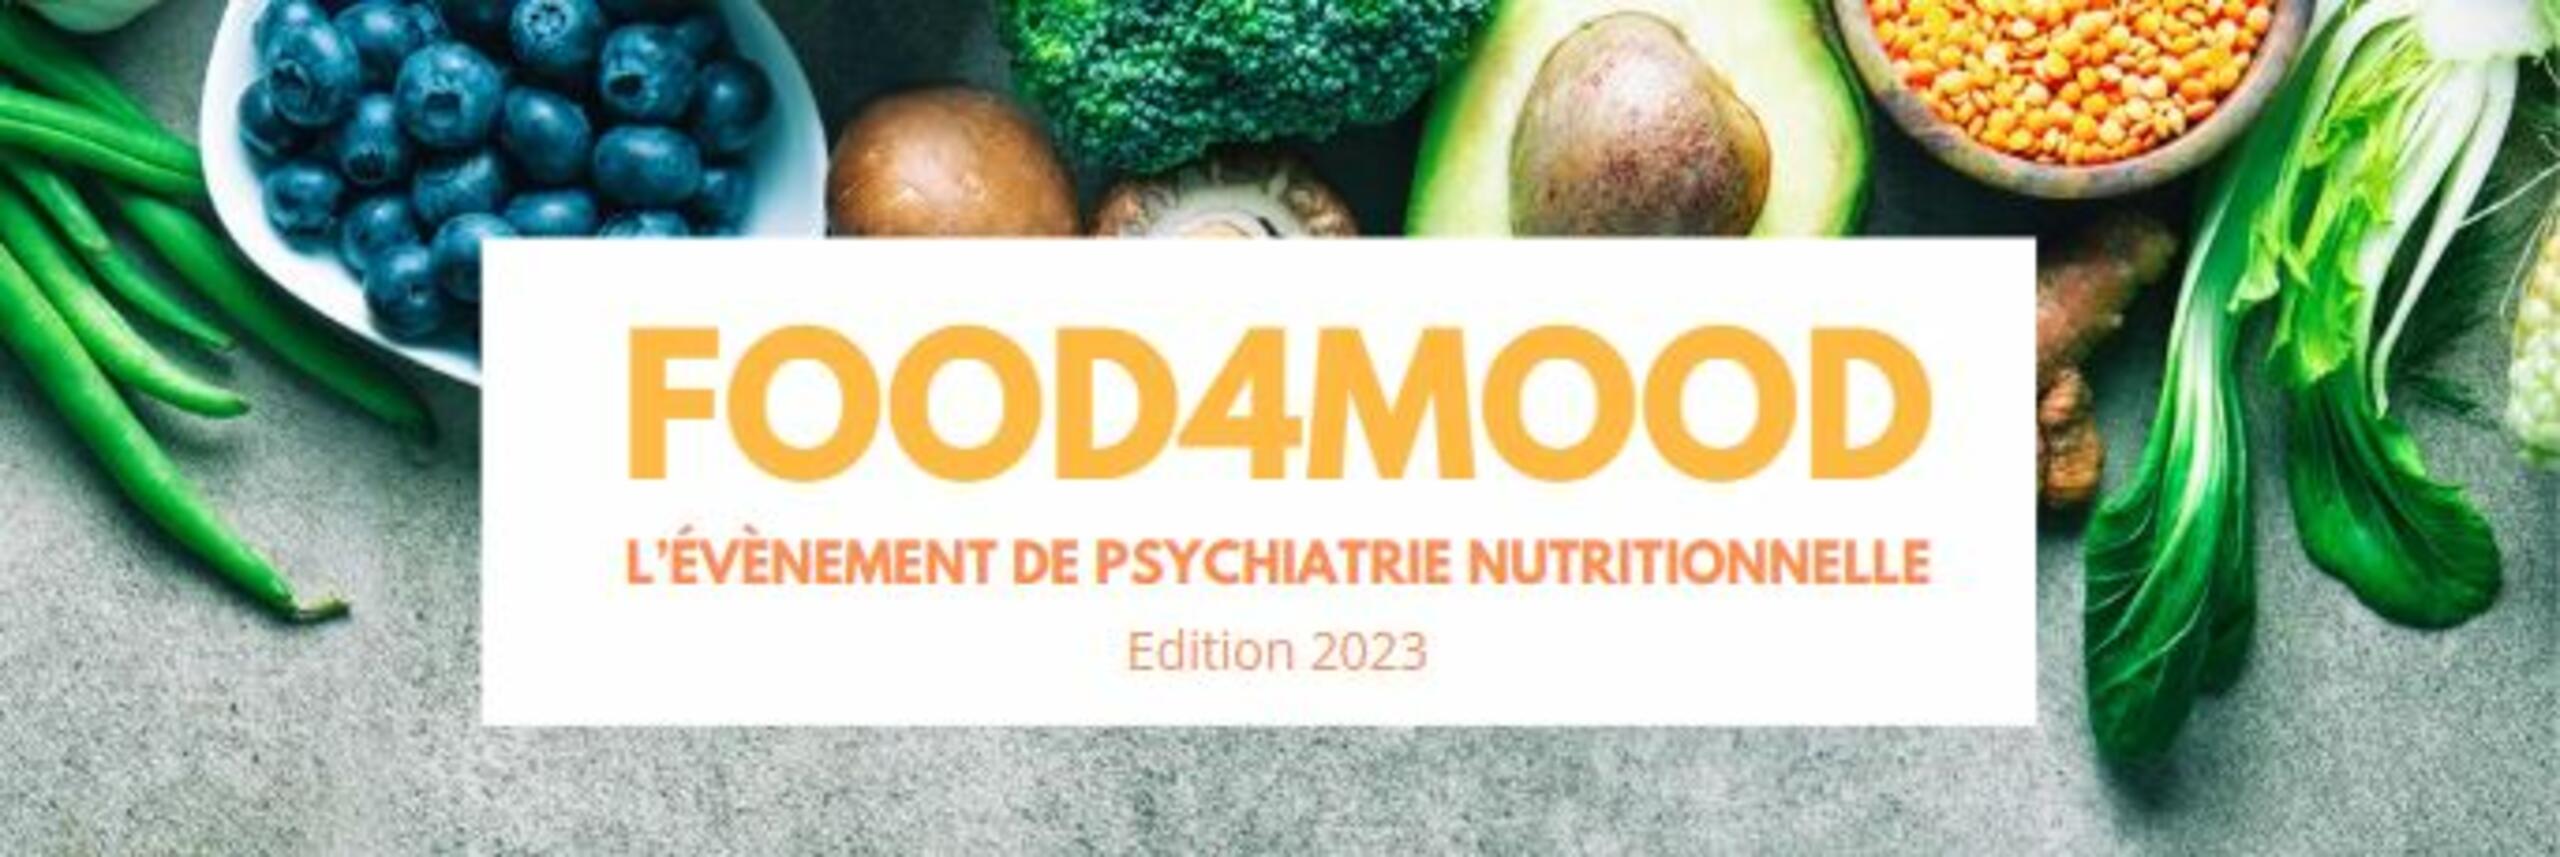 Food4Mood : L'évènement de psychiatrie nutritionnelle